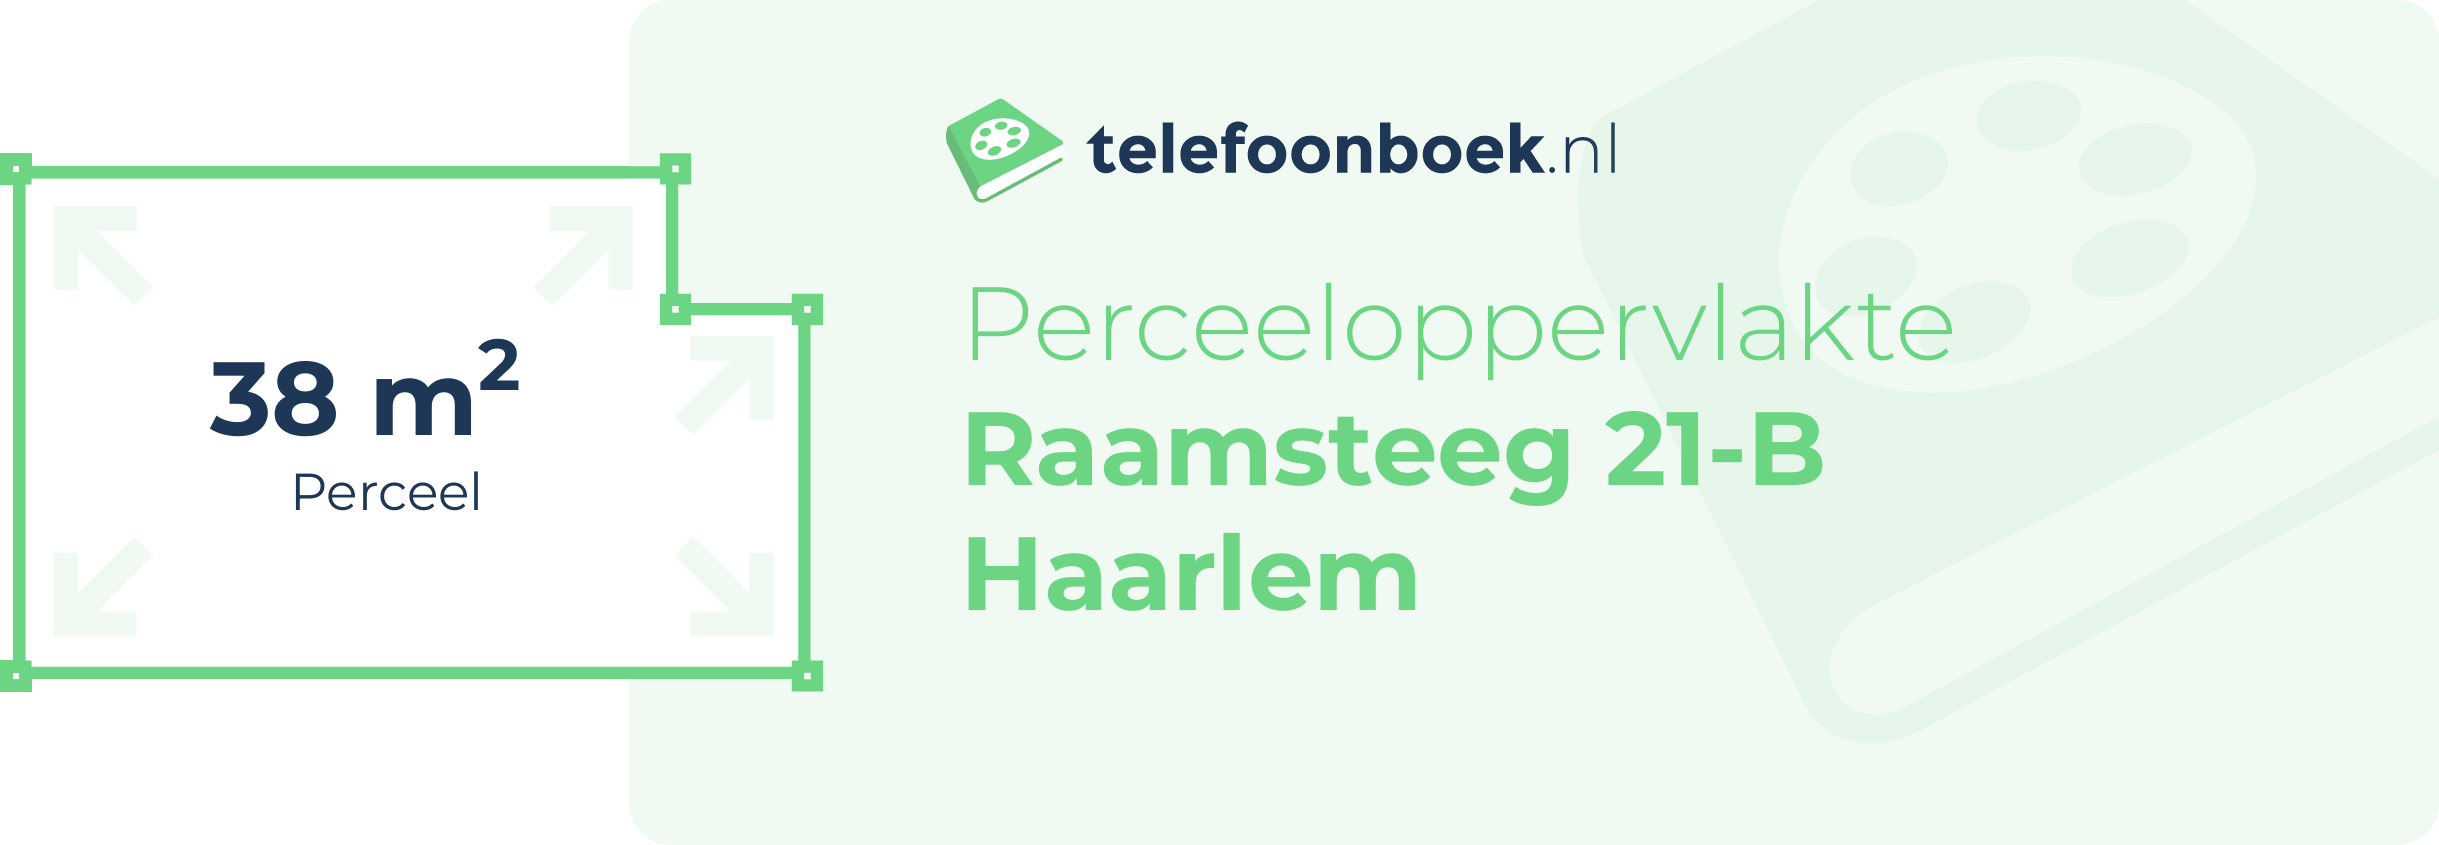 Perceeloppervlakte Raamsteeg 21-B Haarlem